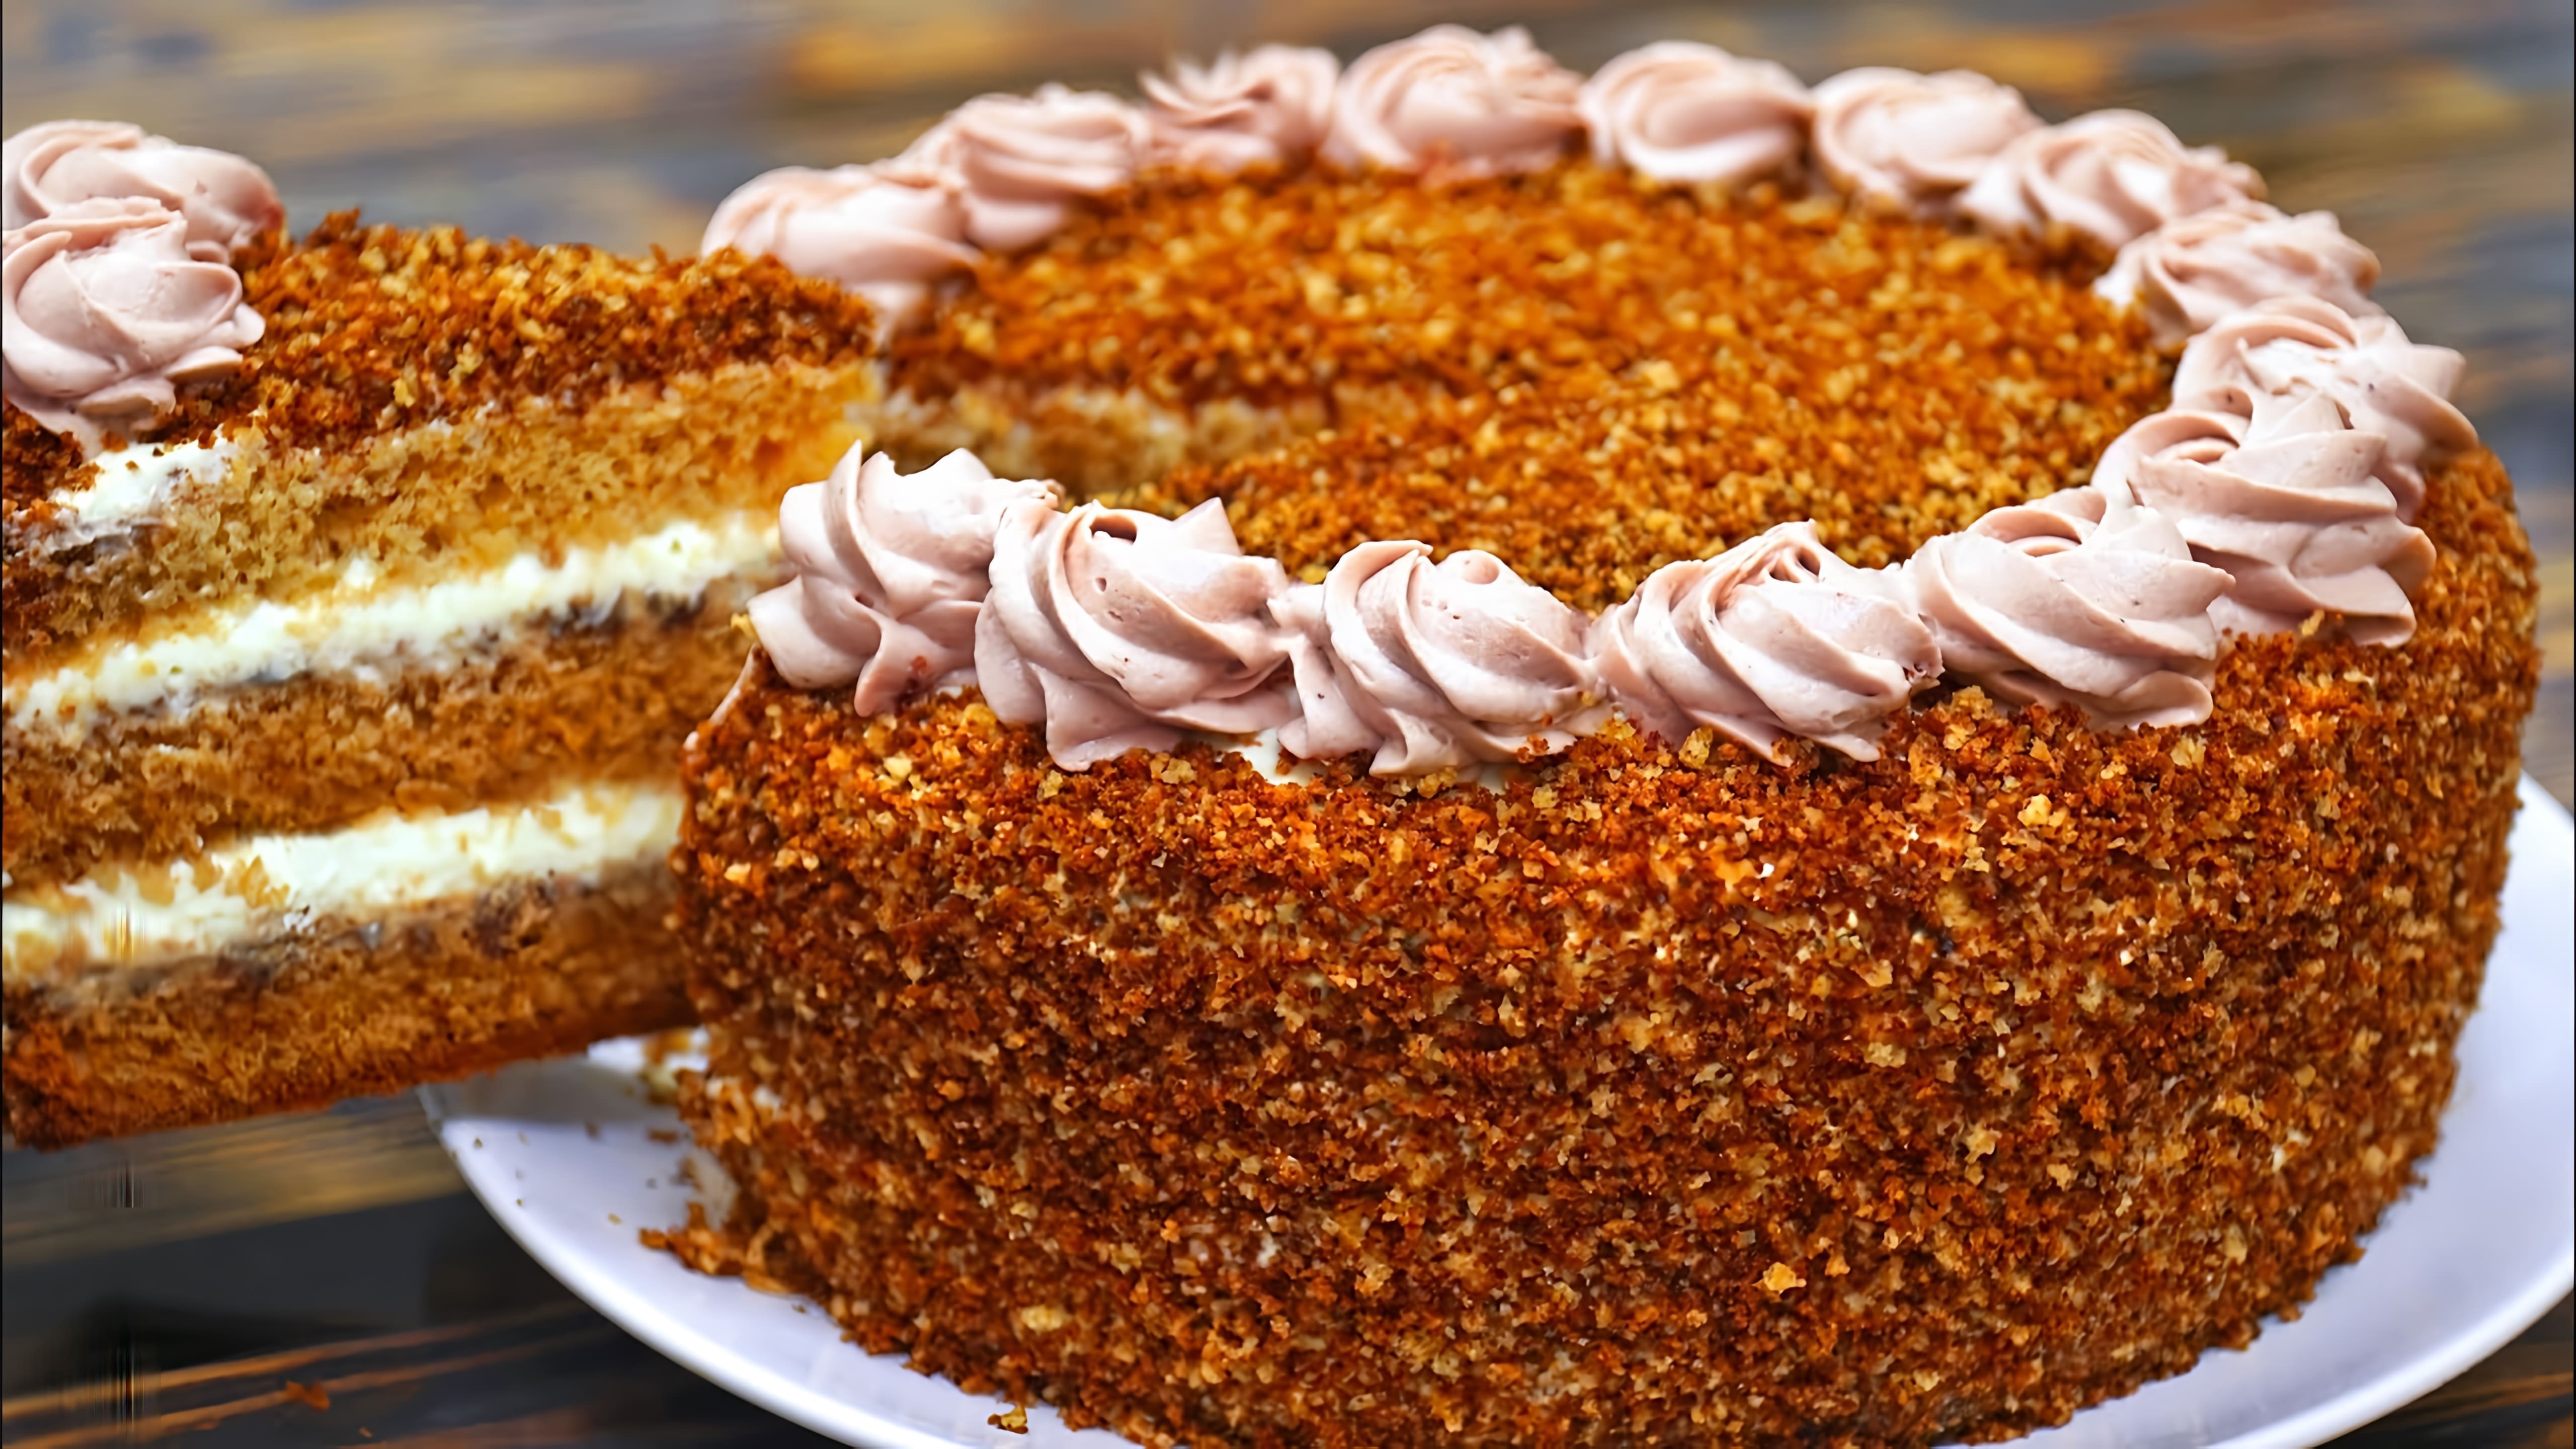 В этом видео представлен рецепт медового торта, который получается легким, нежным, вкусным и воздушным